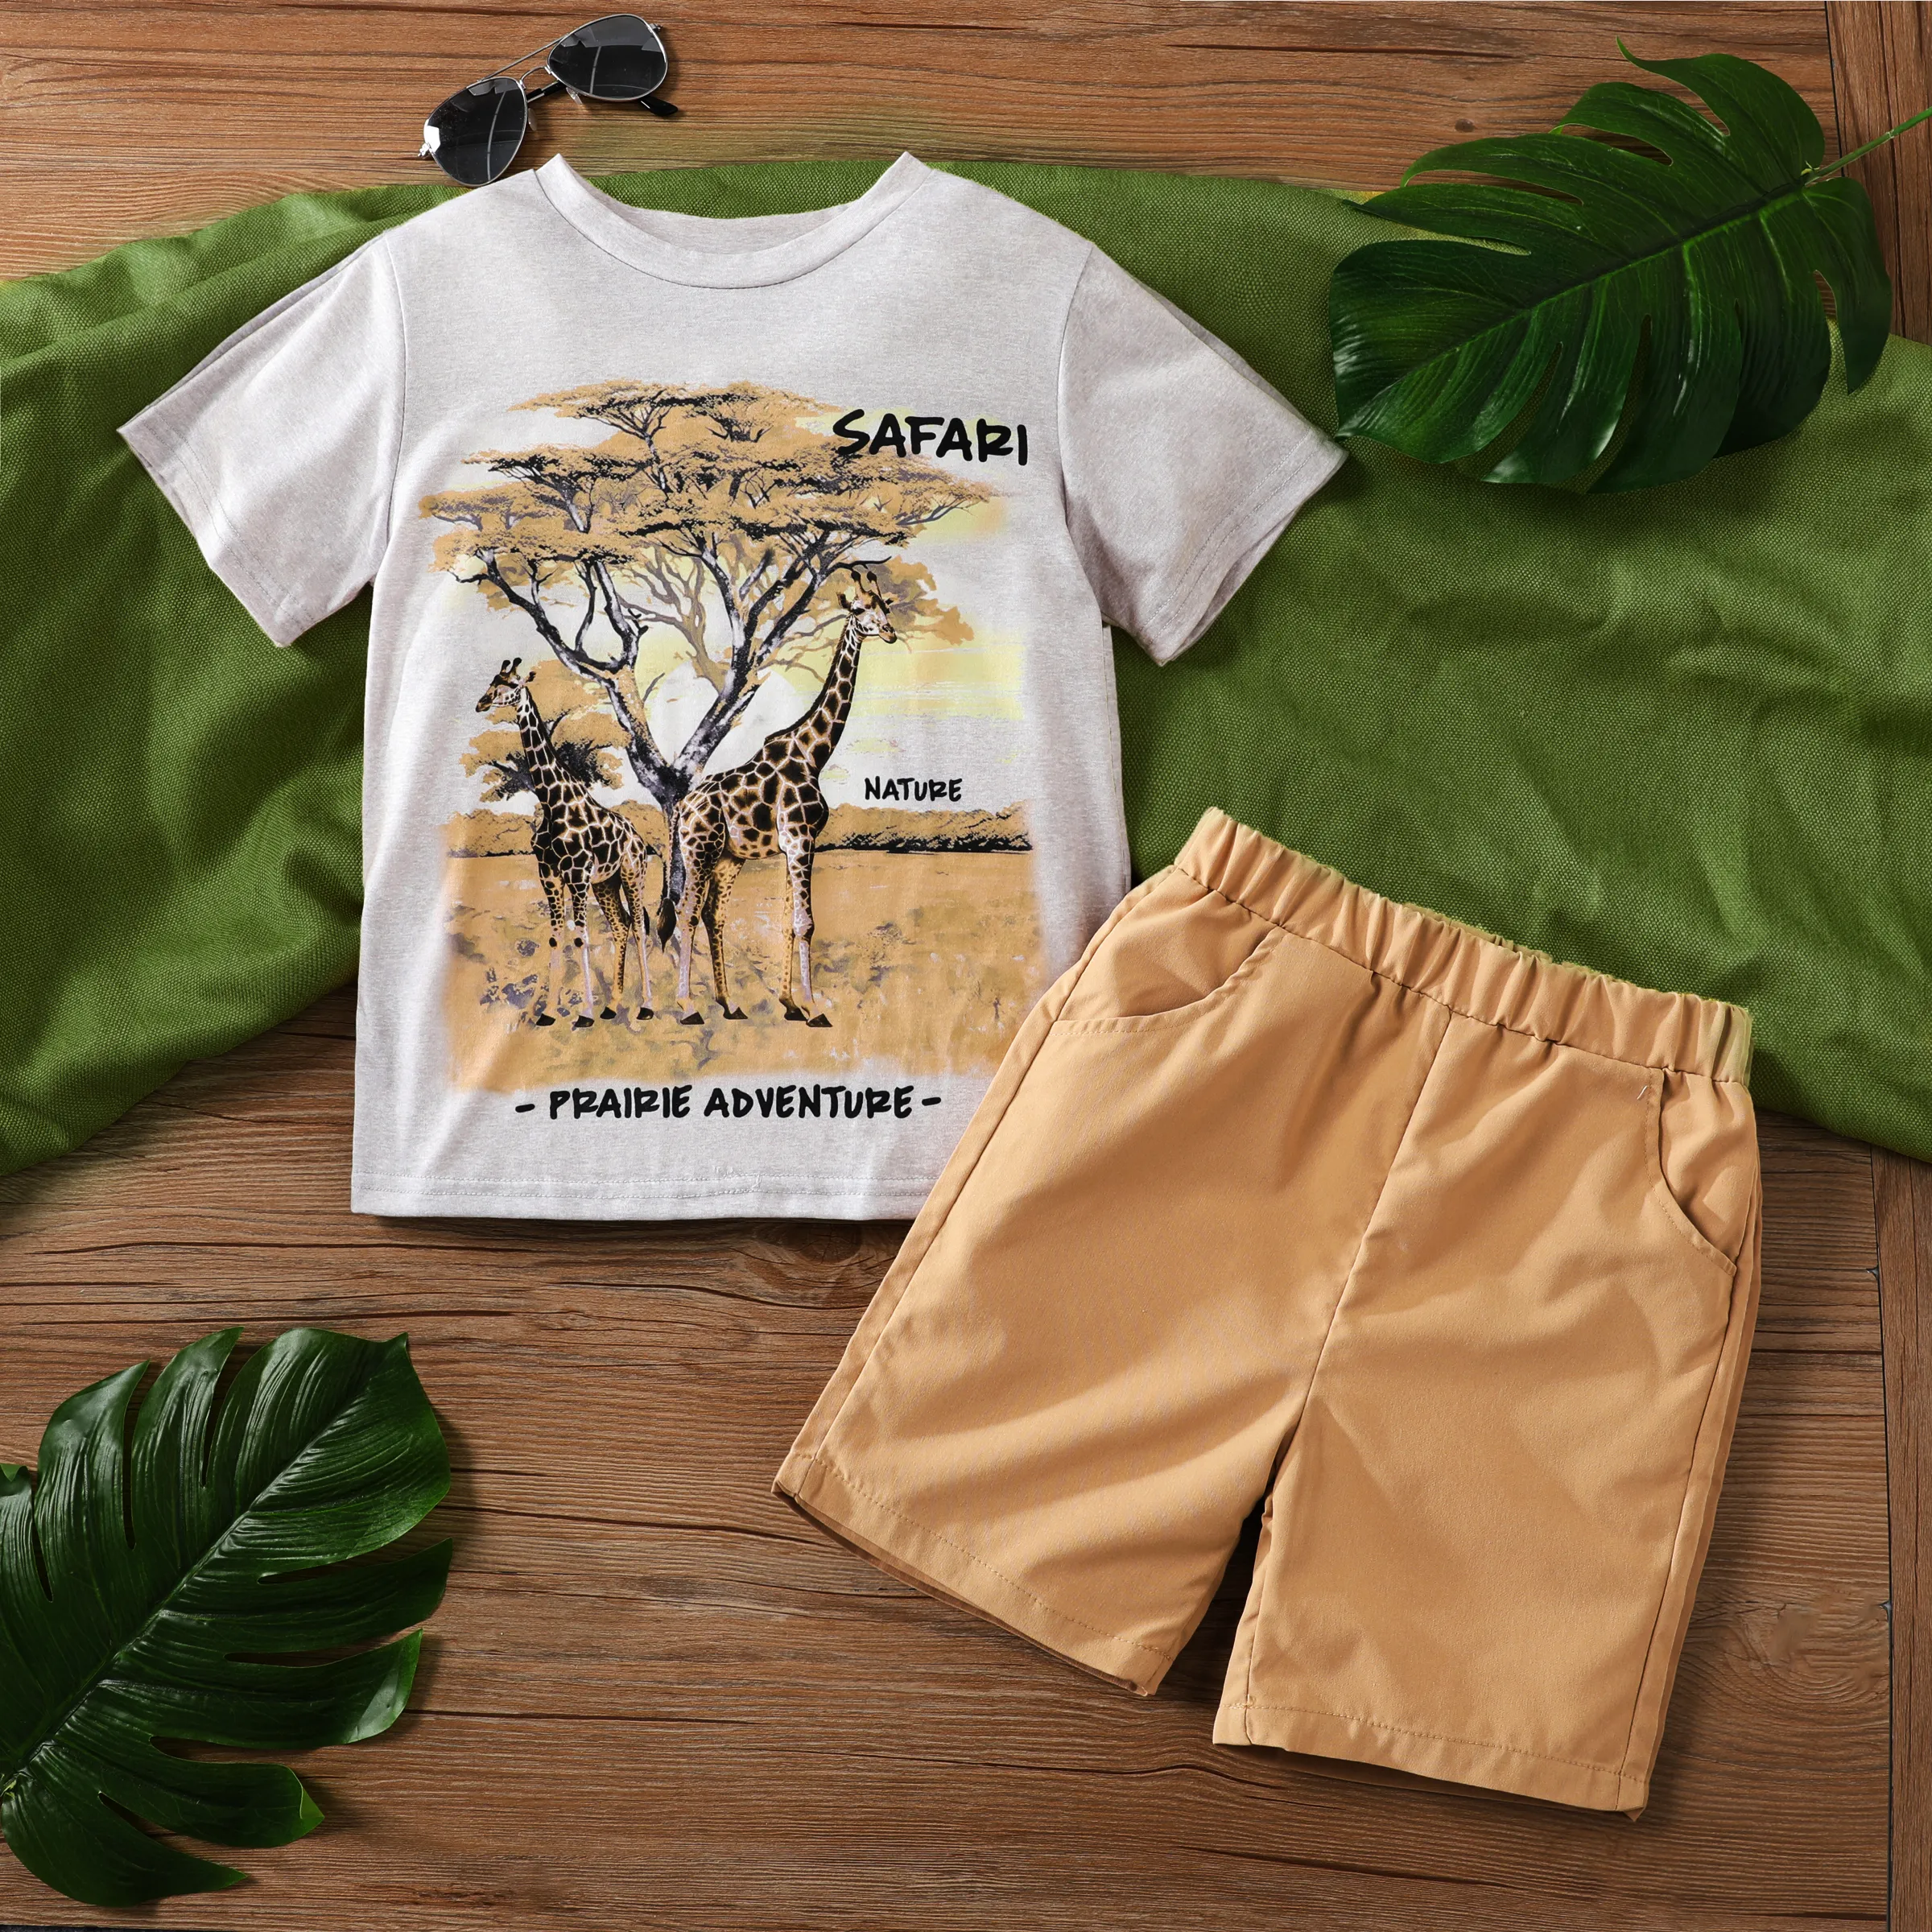 動物圖案鹿豹紋兩件式休閒裝，使用聚酯纖維和氨綸面料，適合男孩穿著，普通款式。